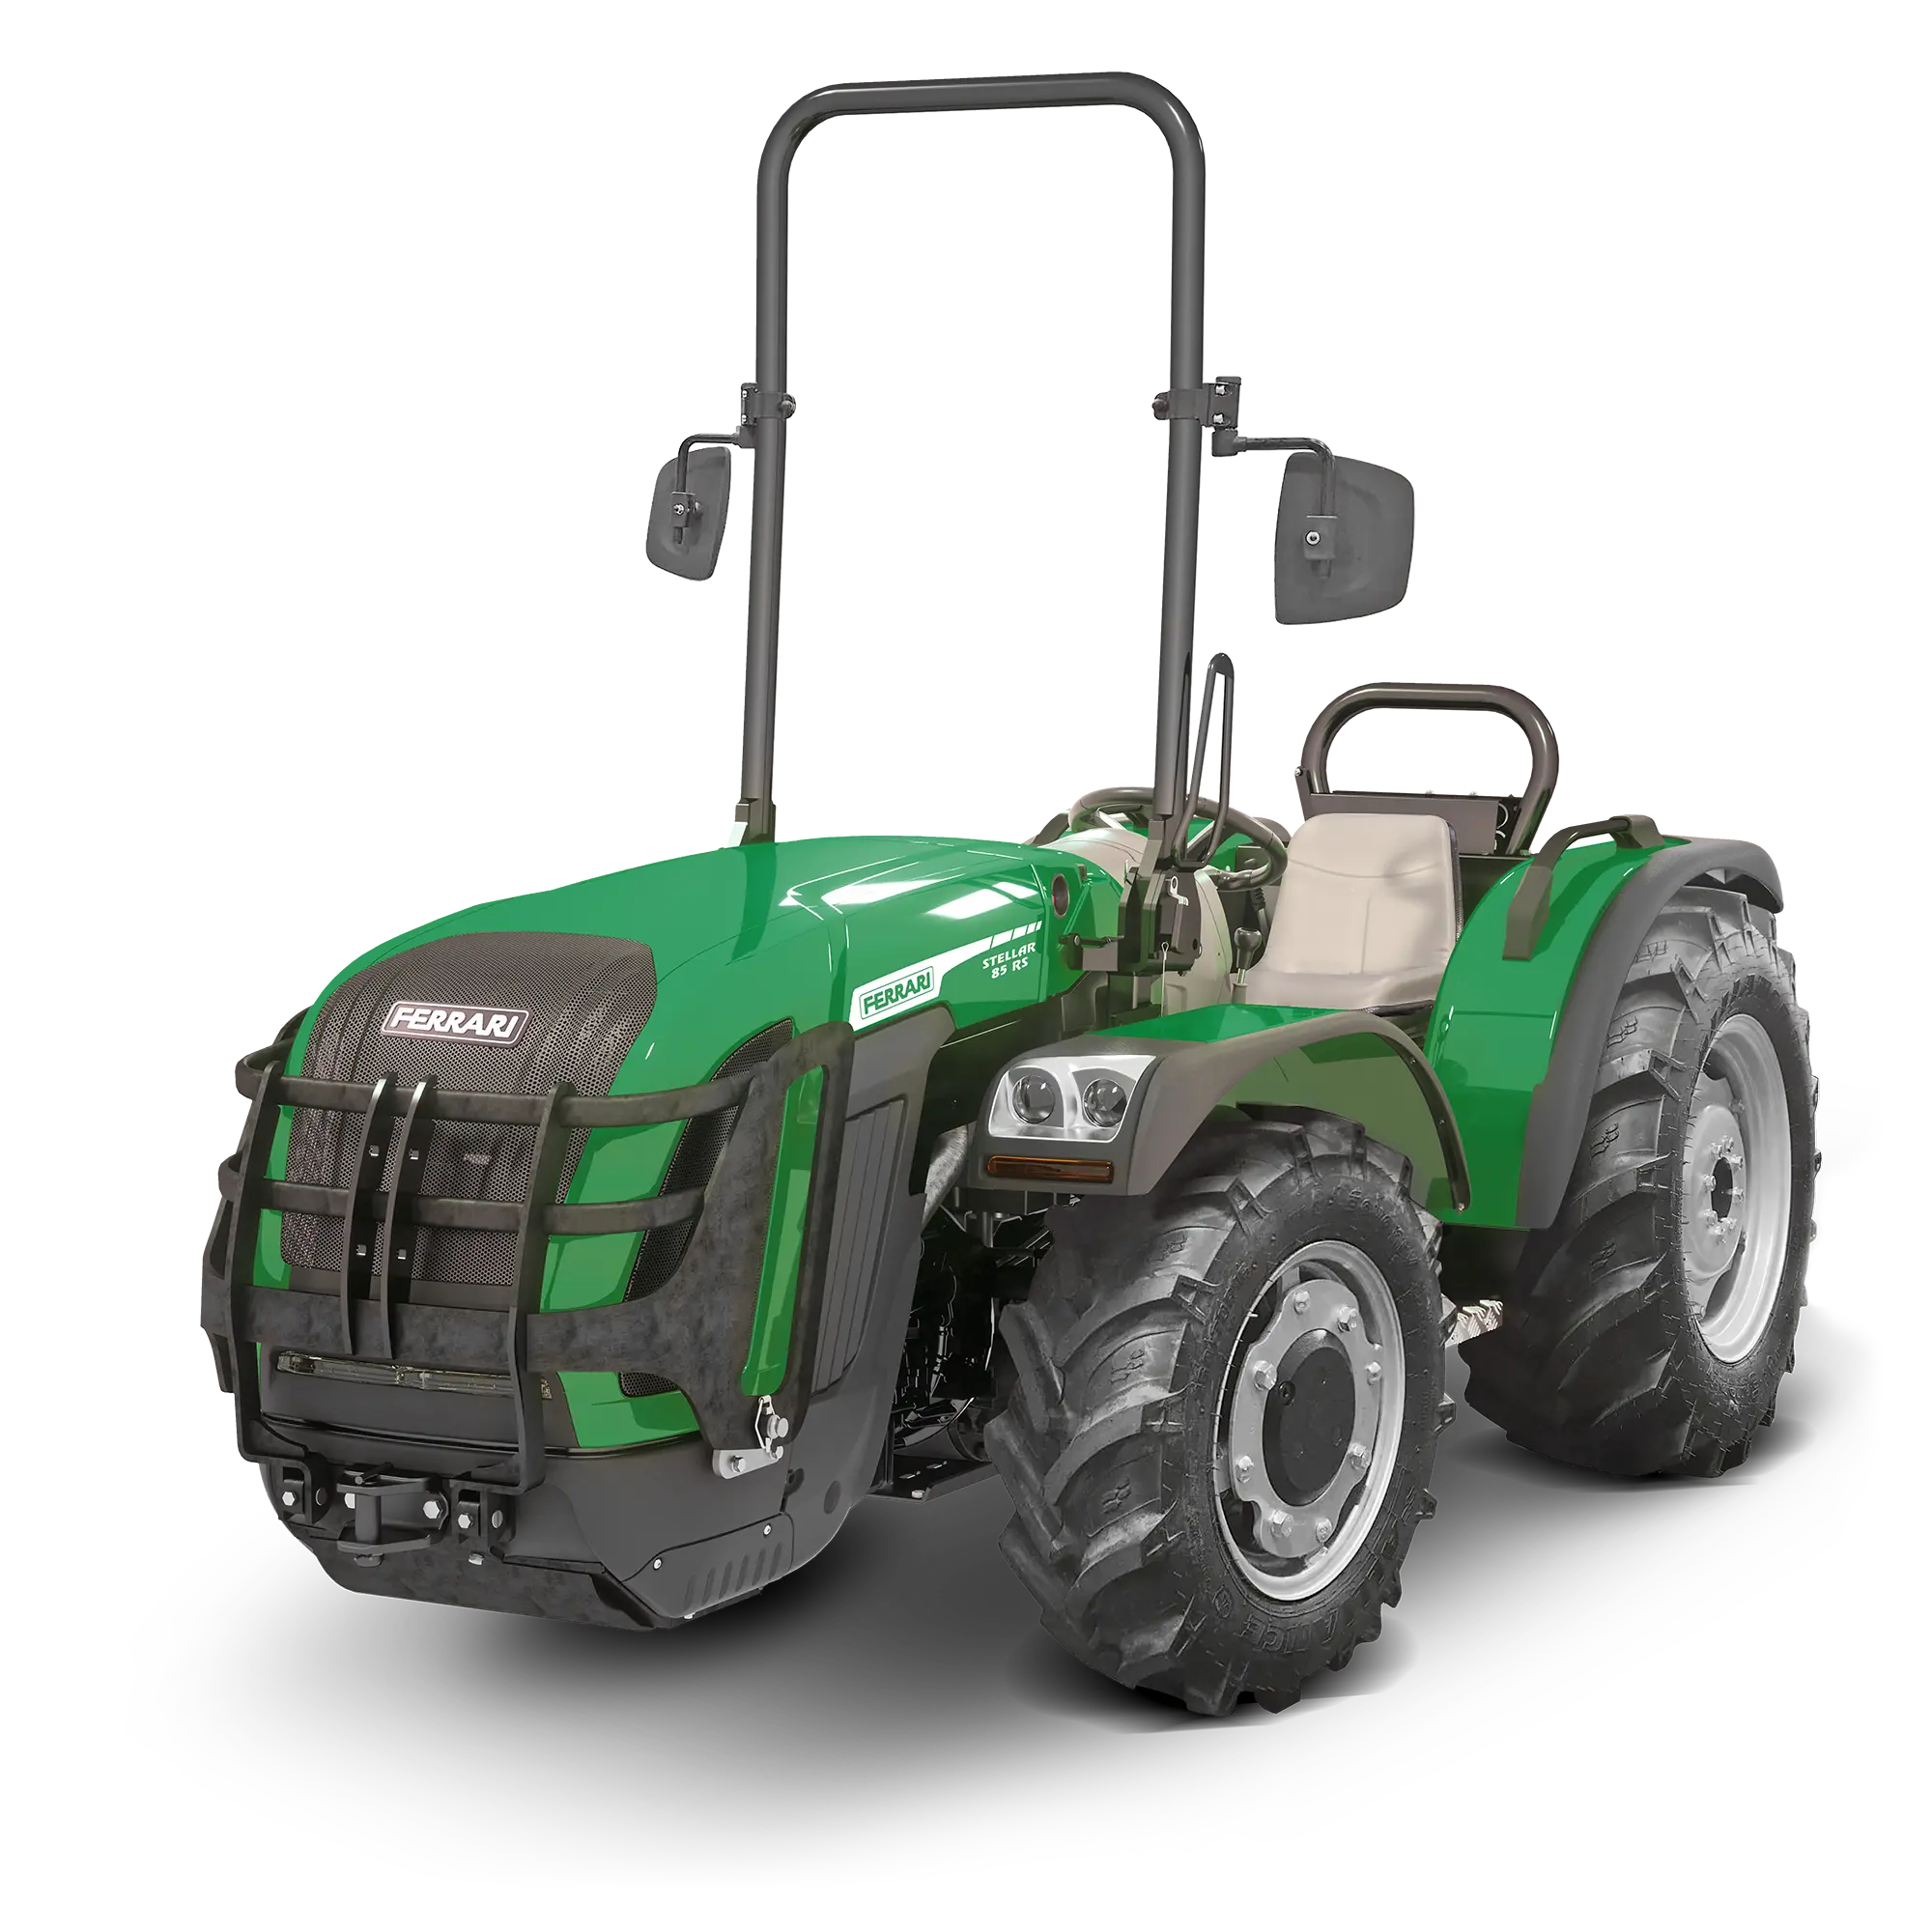 ferrari tractores agricolas - Cuántos tractores hay